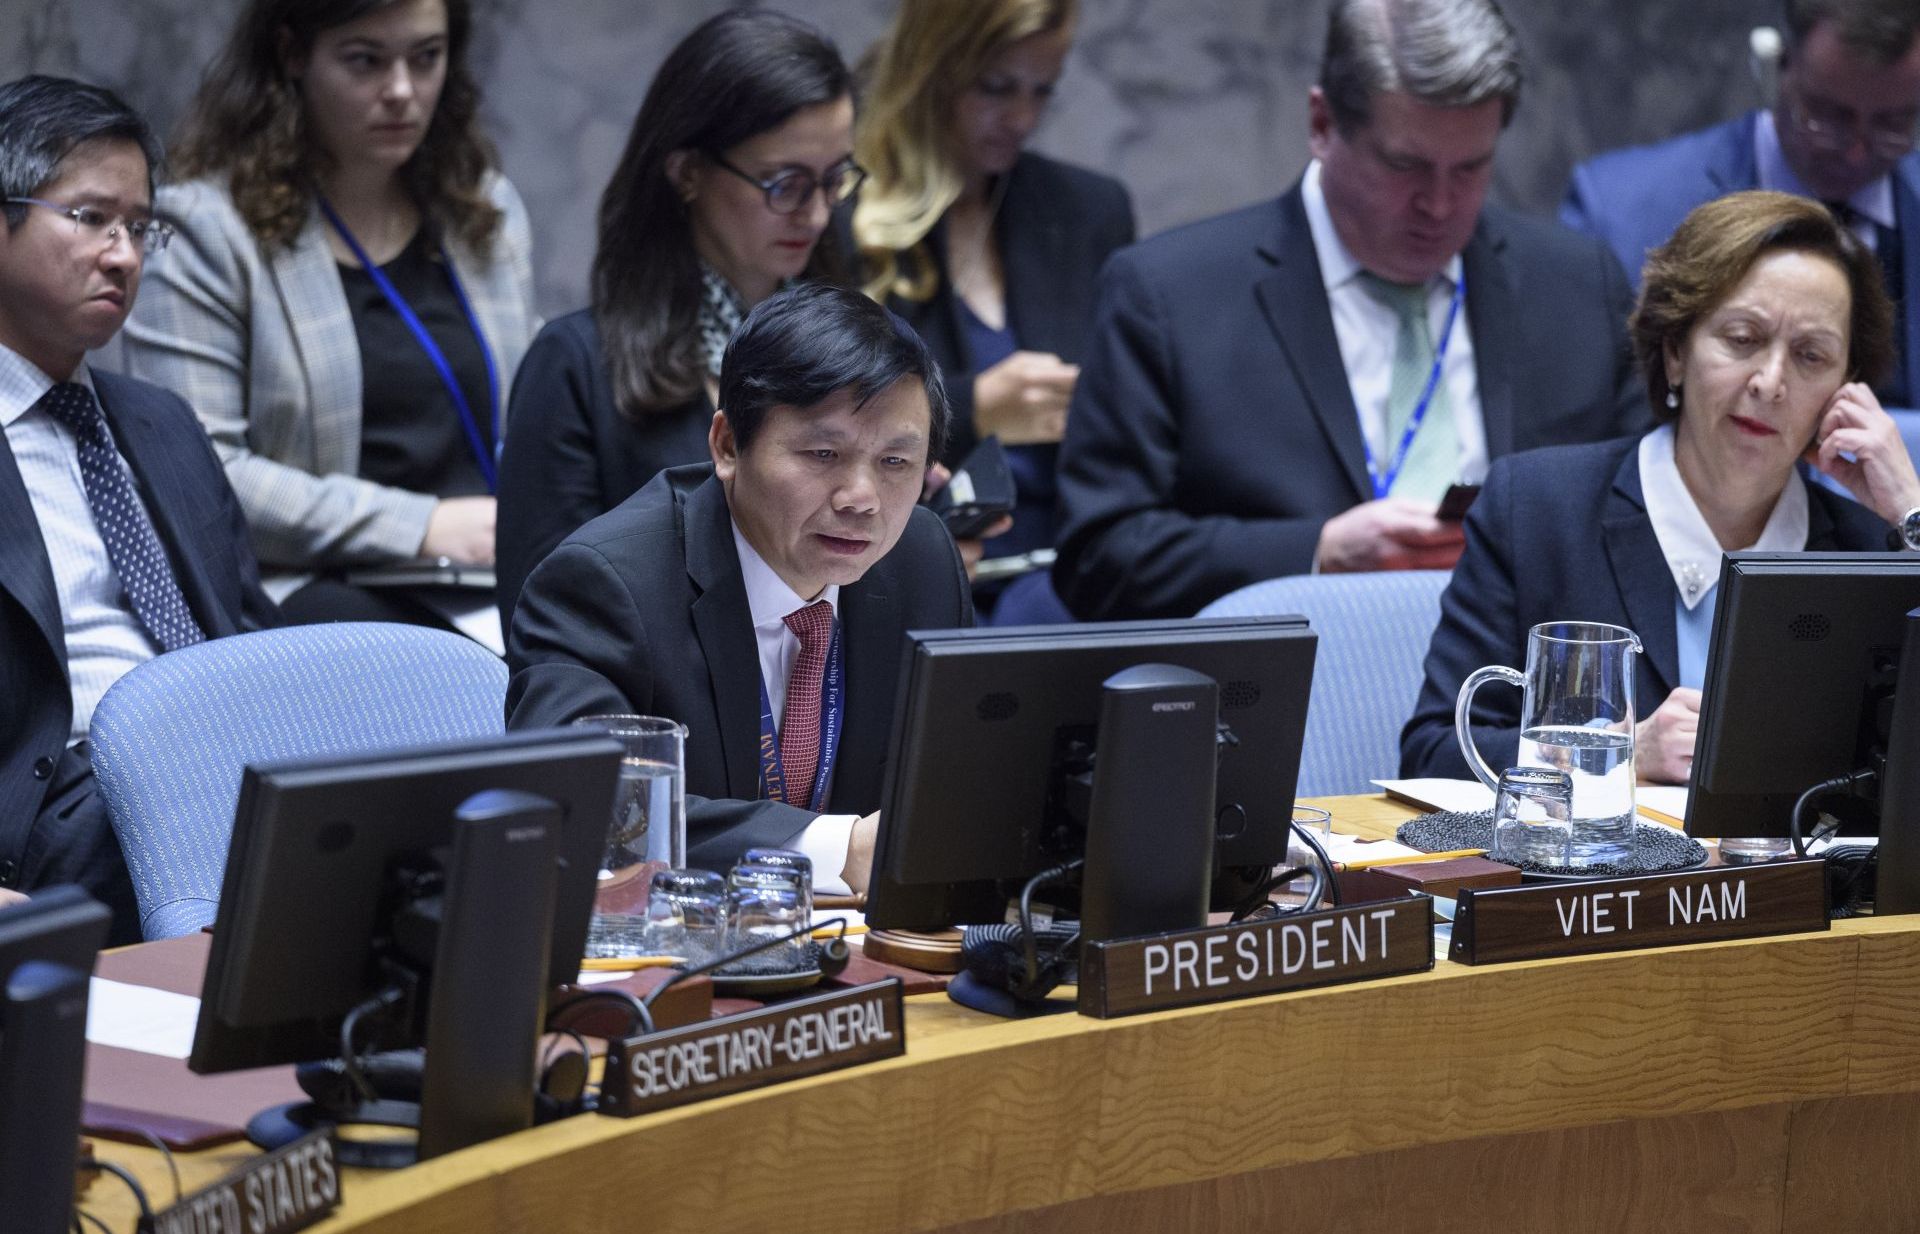 Việt Nam chủ trì phiên họp về tình hình Mali tại Hội đồng Bảo an